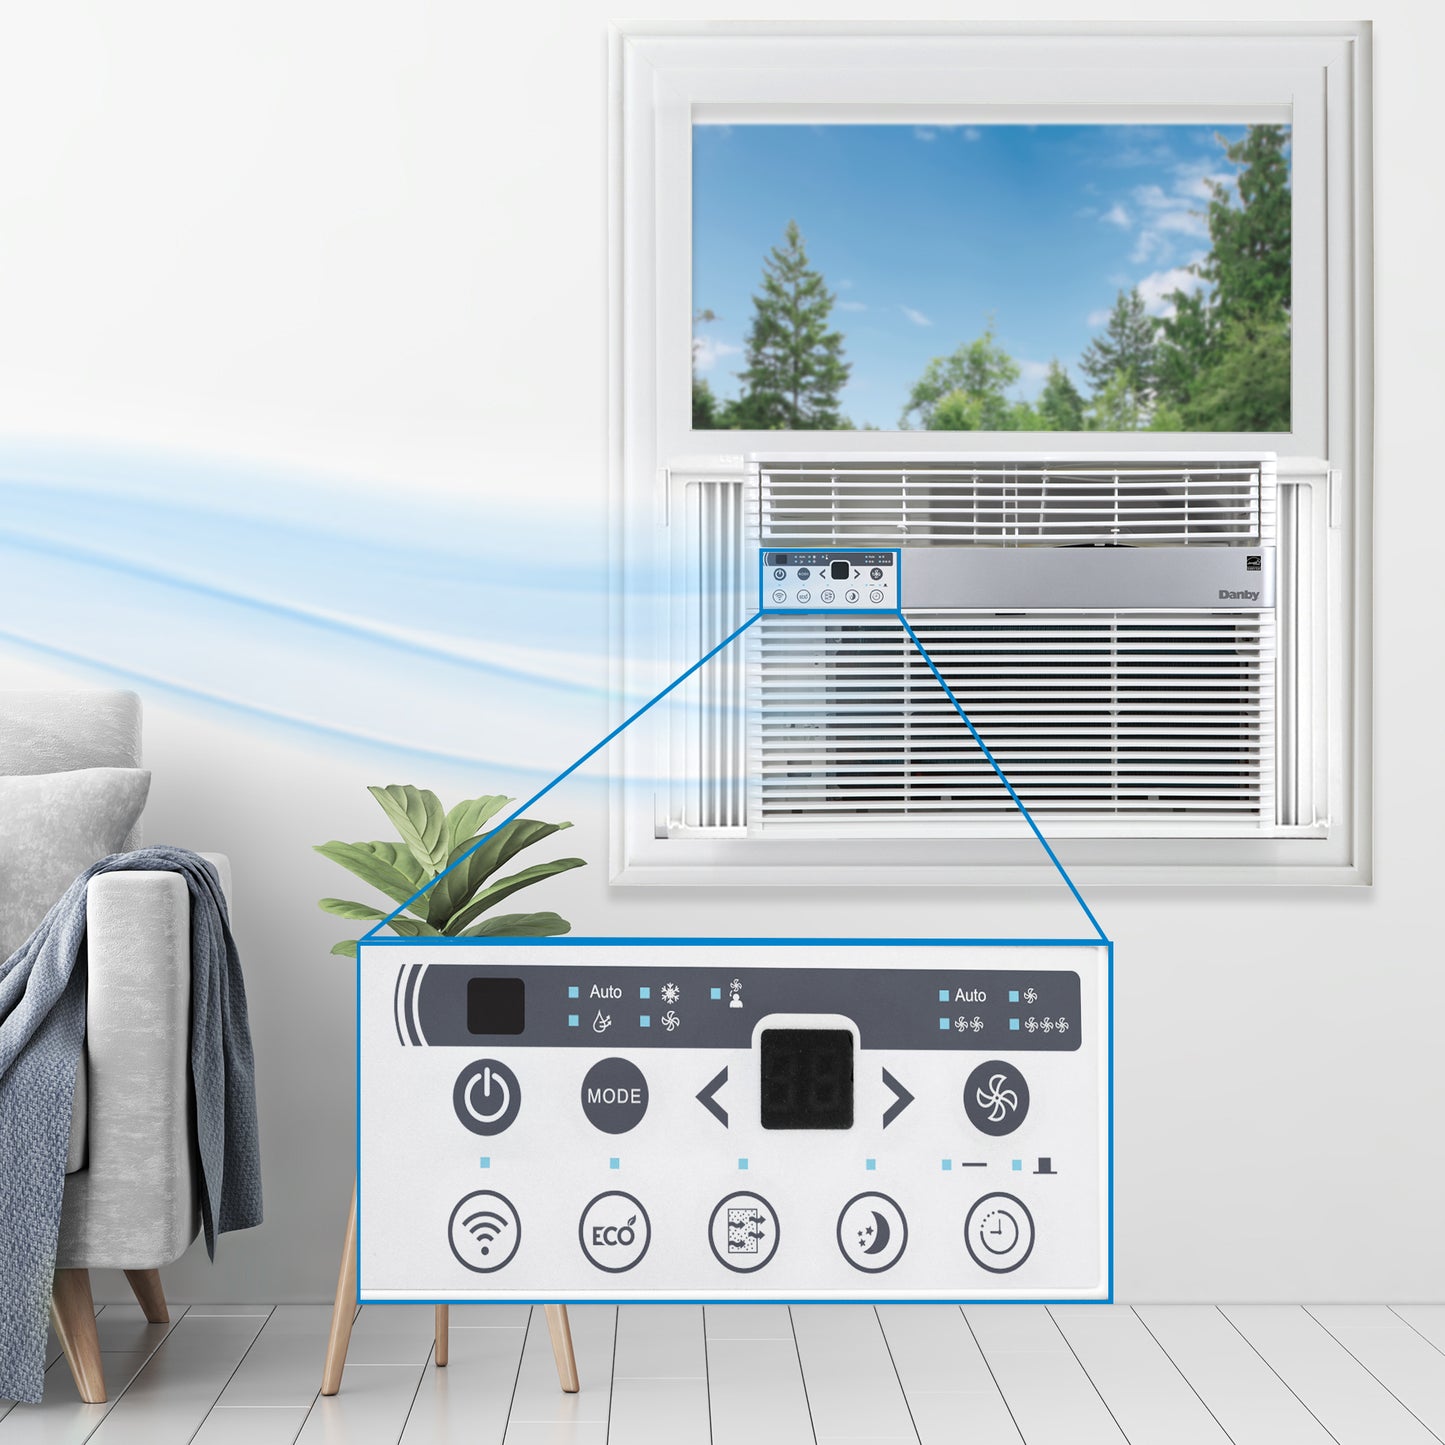 Danby 14500 BTU Window Air Conditioner - RF